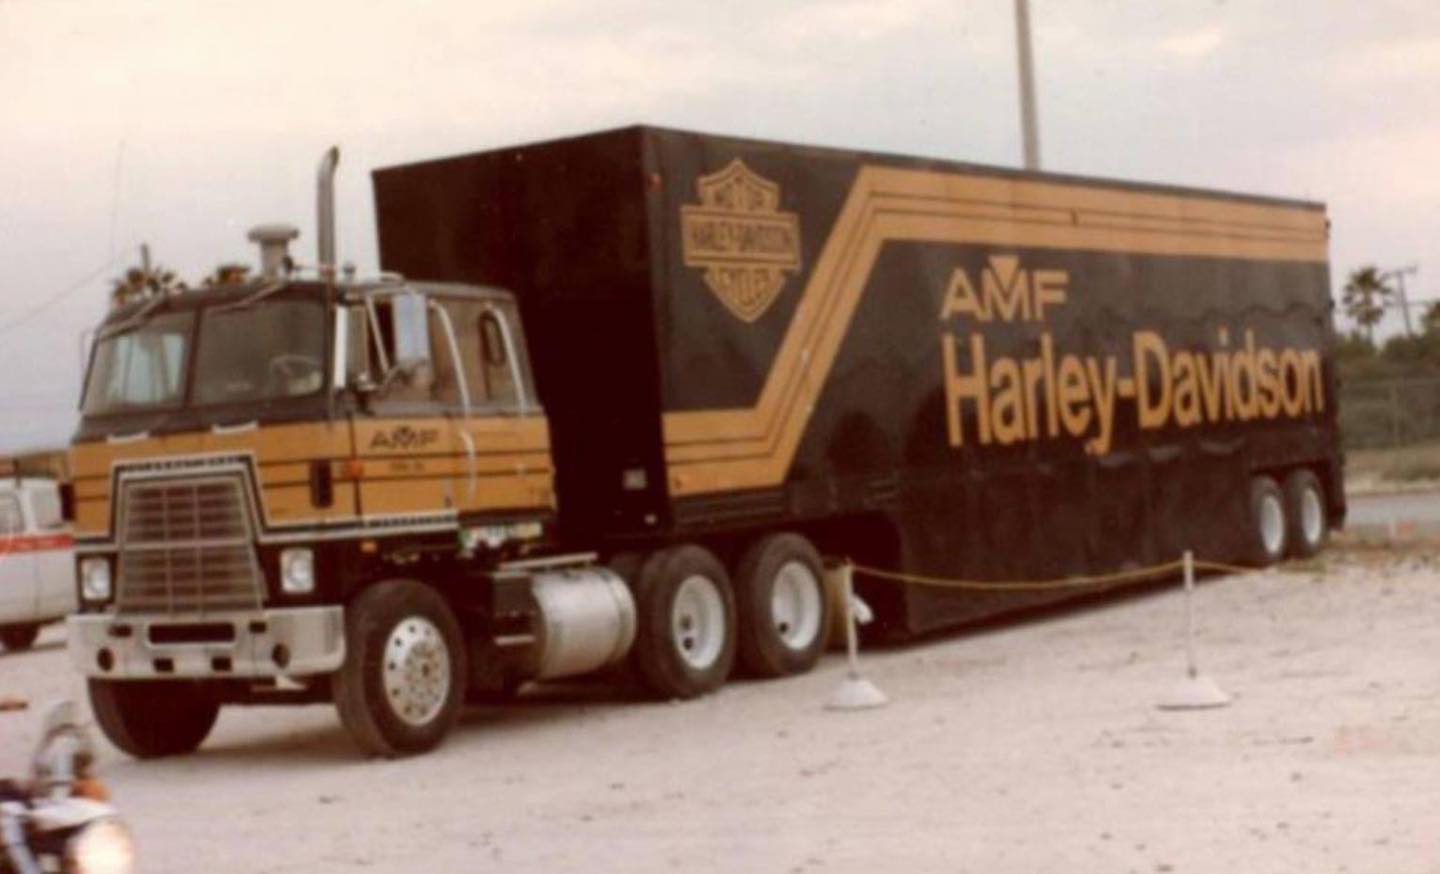 Harley-Davidson AMF trailer